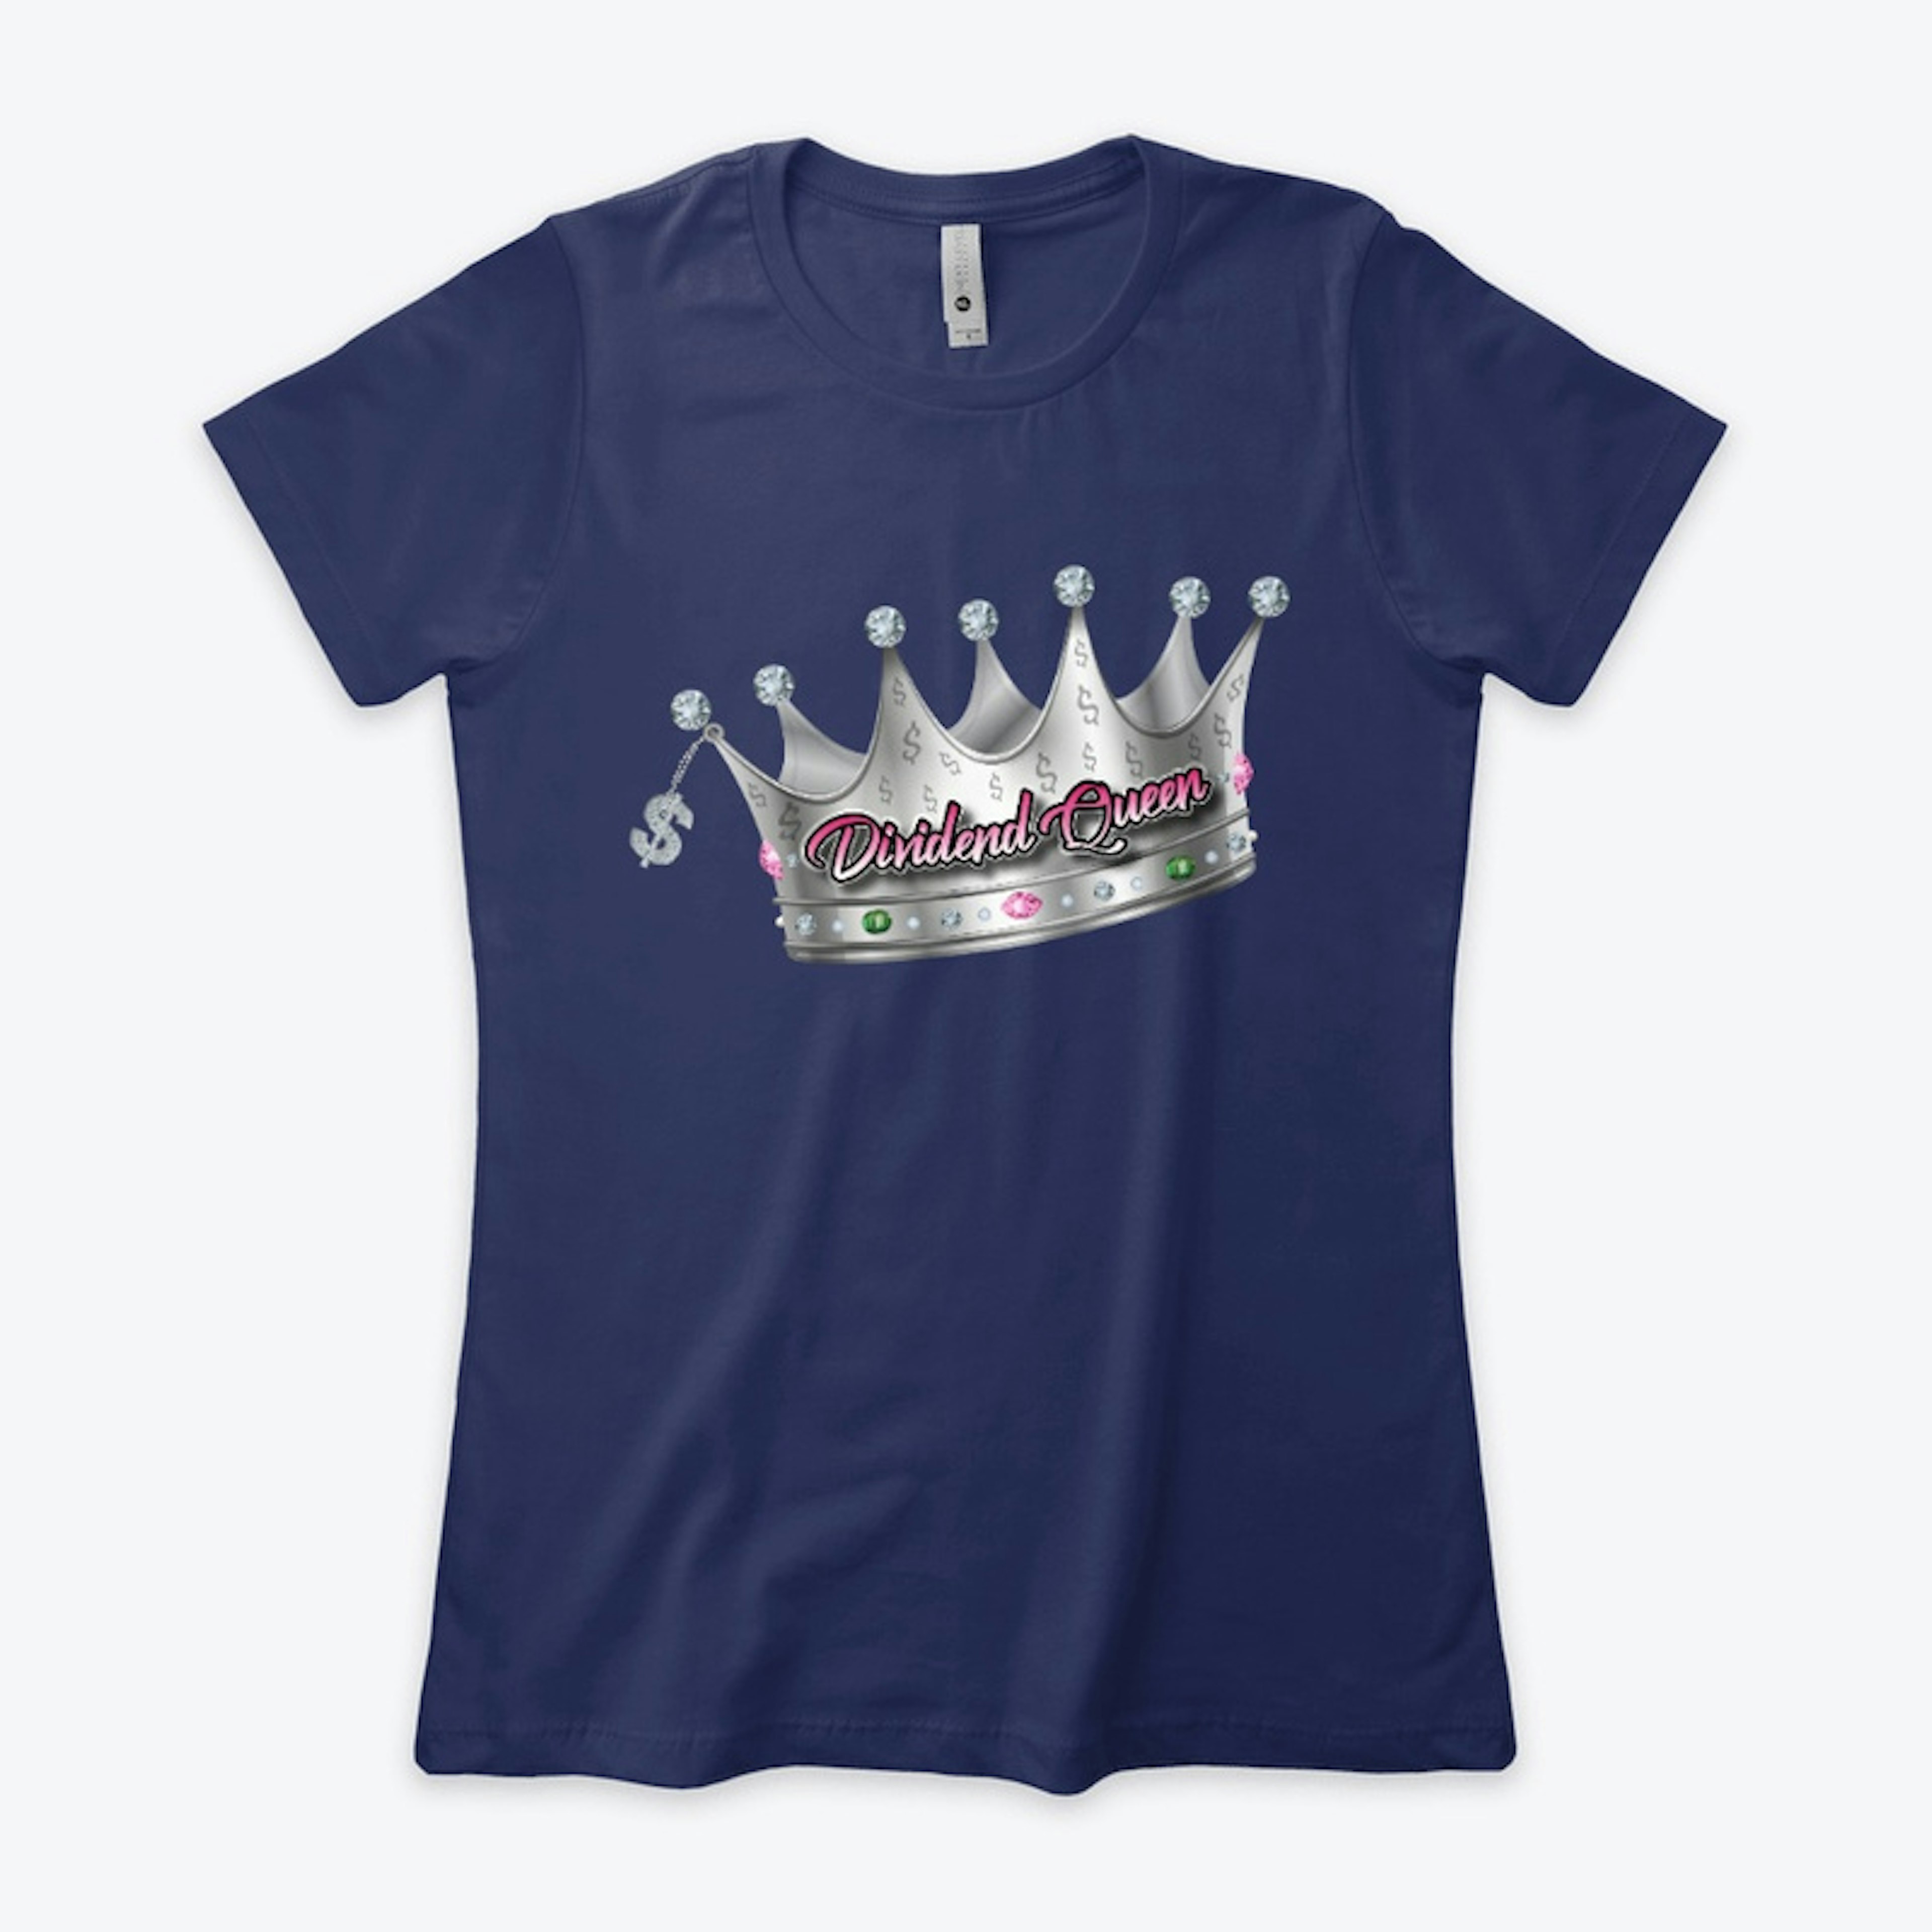 Dividend Queen Women's Navy Blue T-Shirt